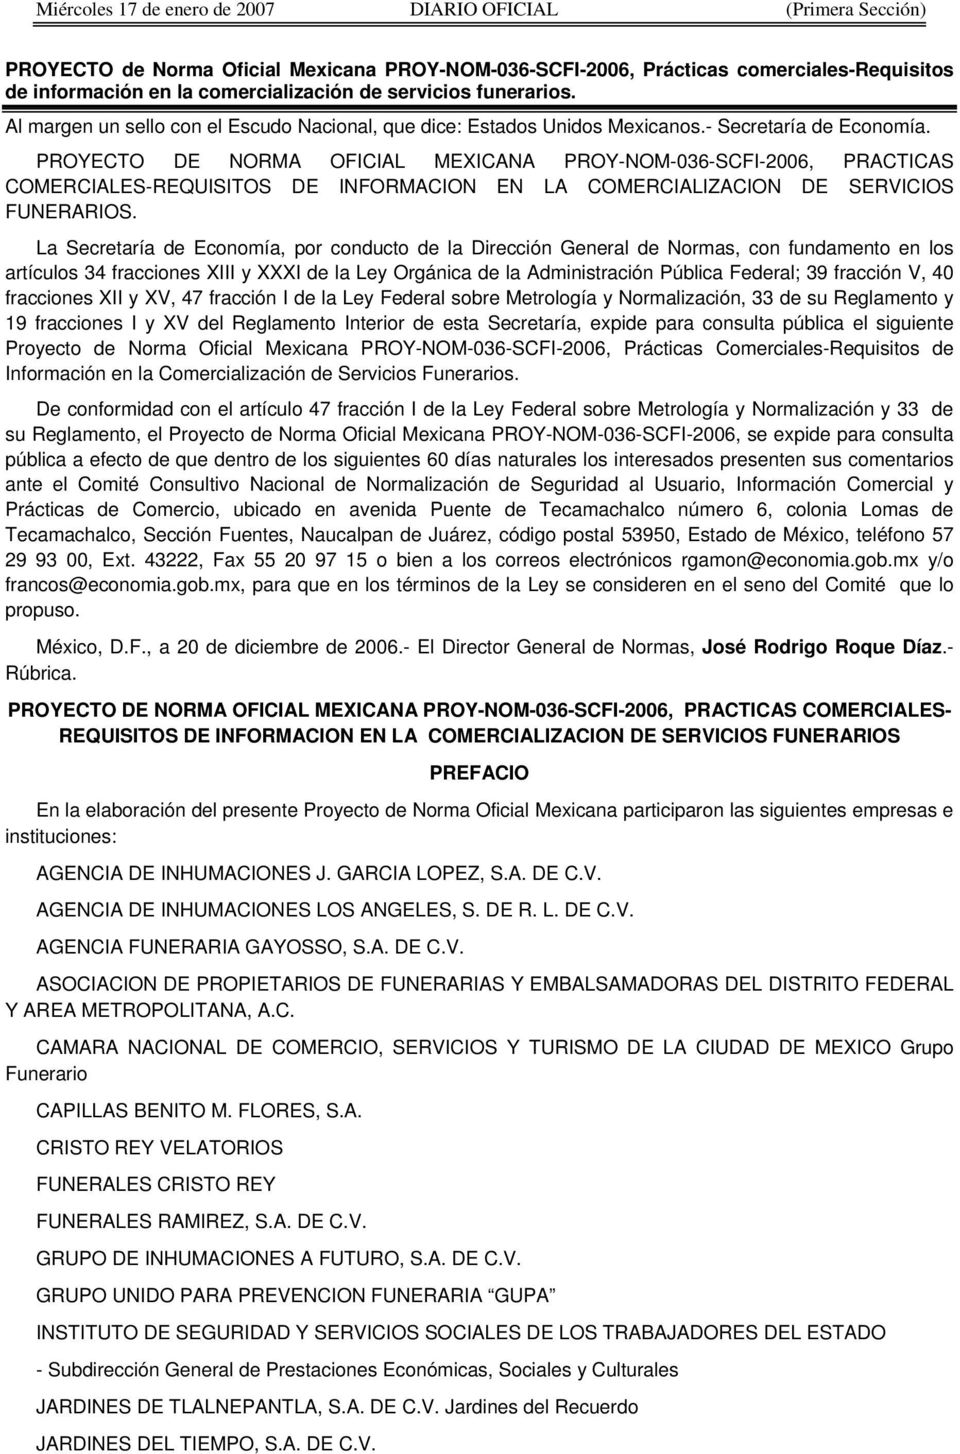 PROYECTO DE NORMA OFICIAL MEXICANA PROY-NOM-036-SCFI-2006, PRACTICAS COMERCIALES-REQUISITOS DE INFORMACION EN LA COMERCIALIZACION DE SERVICIOS FUNERARIOS.